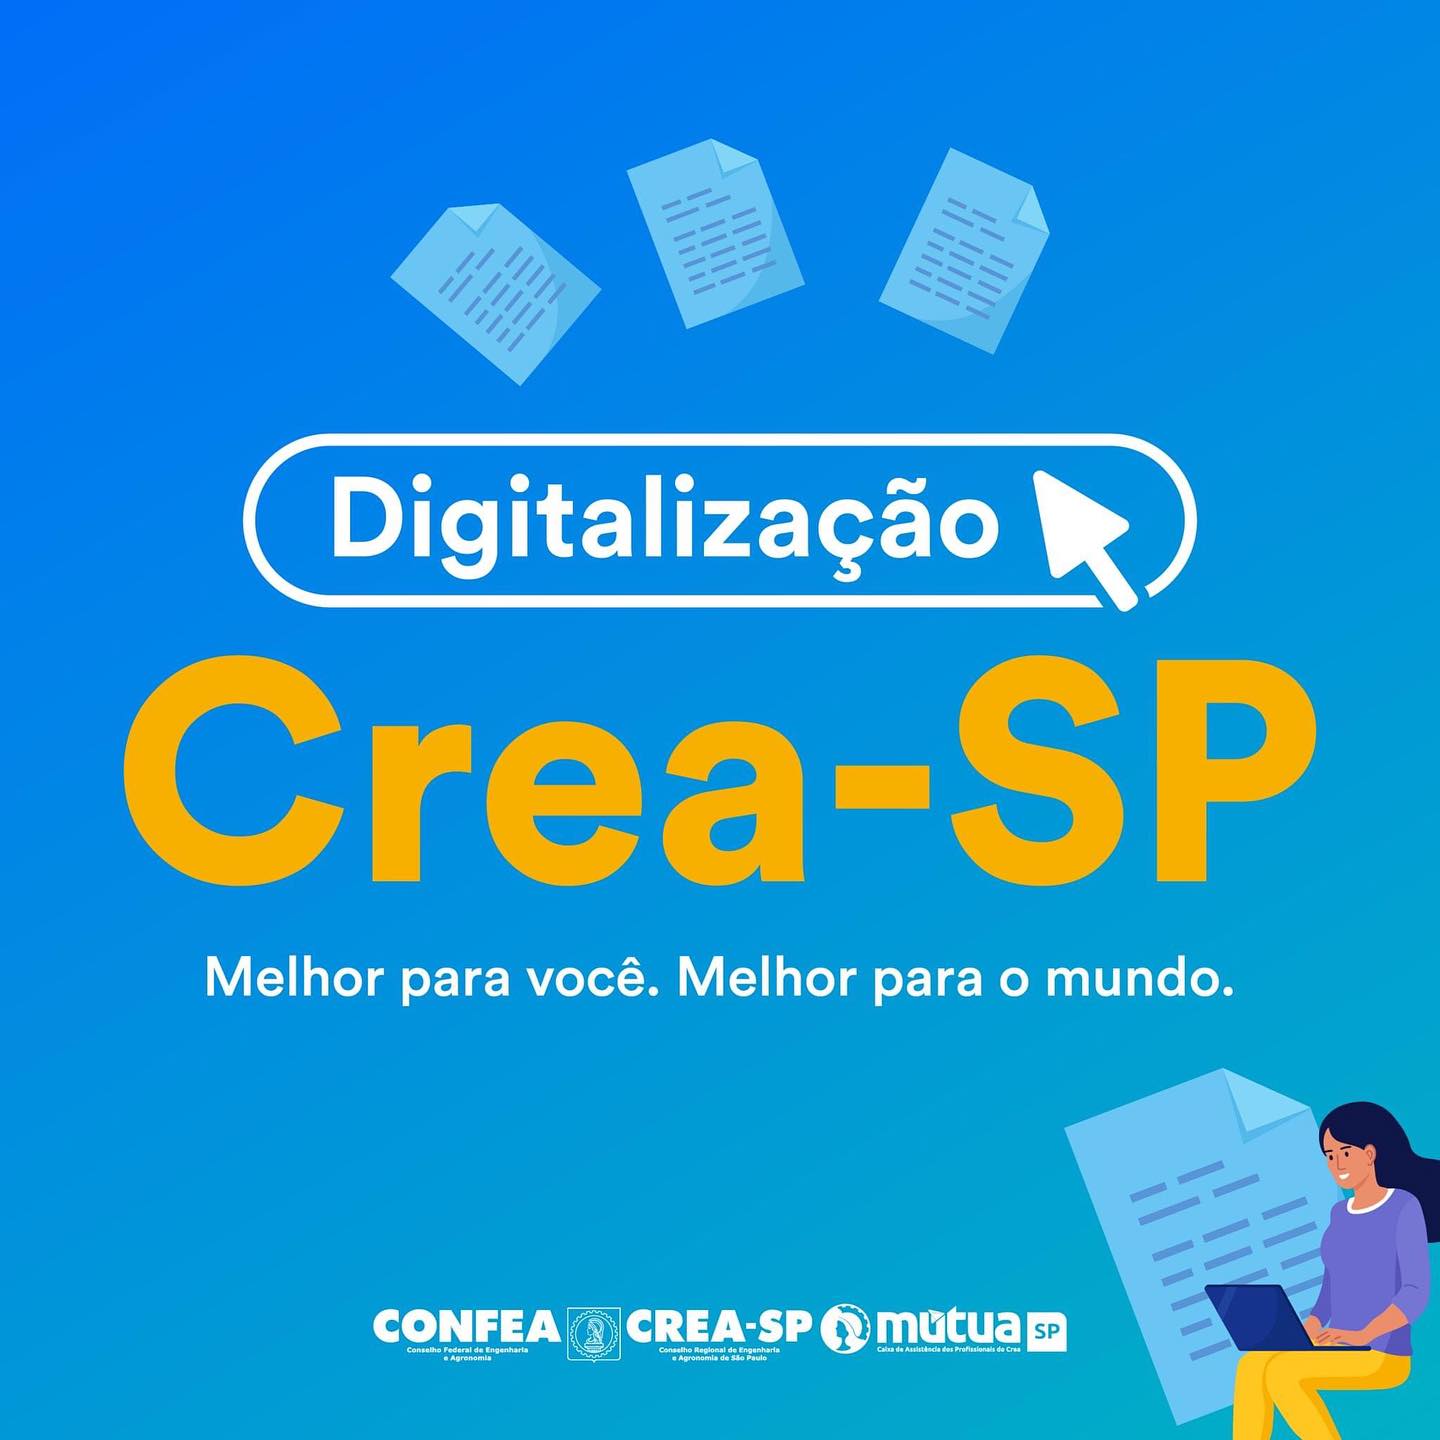 1 Repost @creasaopaulo O Crea-SP está ainda mais digital!